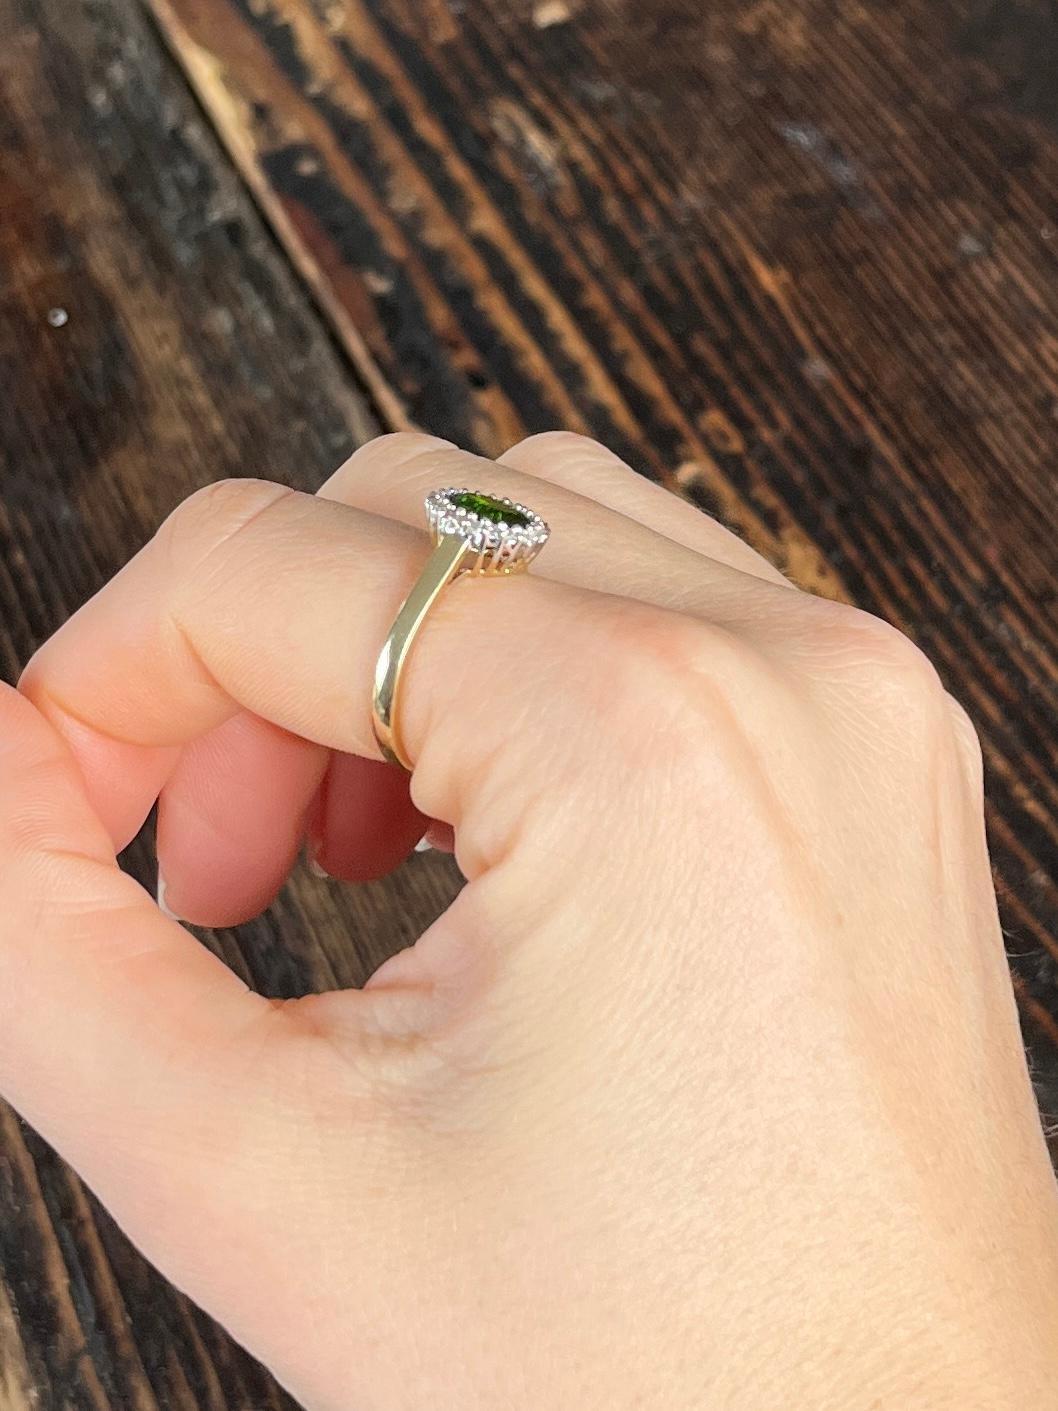 Der 1-karätige Turmalin in diesem Ring hat eine tiefe, köstliche grüne Farbe und wird durch einen Kranz schimmernder, runder Diamanten im Brillantschliff von insgesamt 20 Pence perfekt ergänzt. Die Steine sind in Platin gefasst, der Rest des Rings